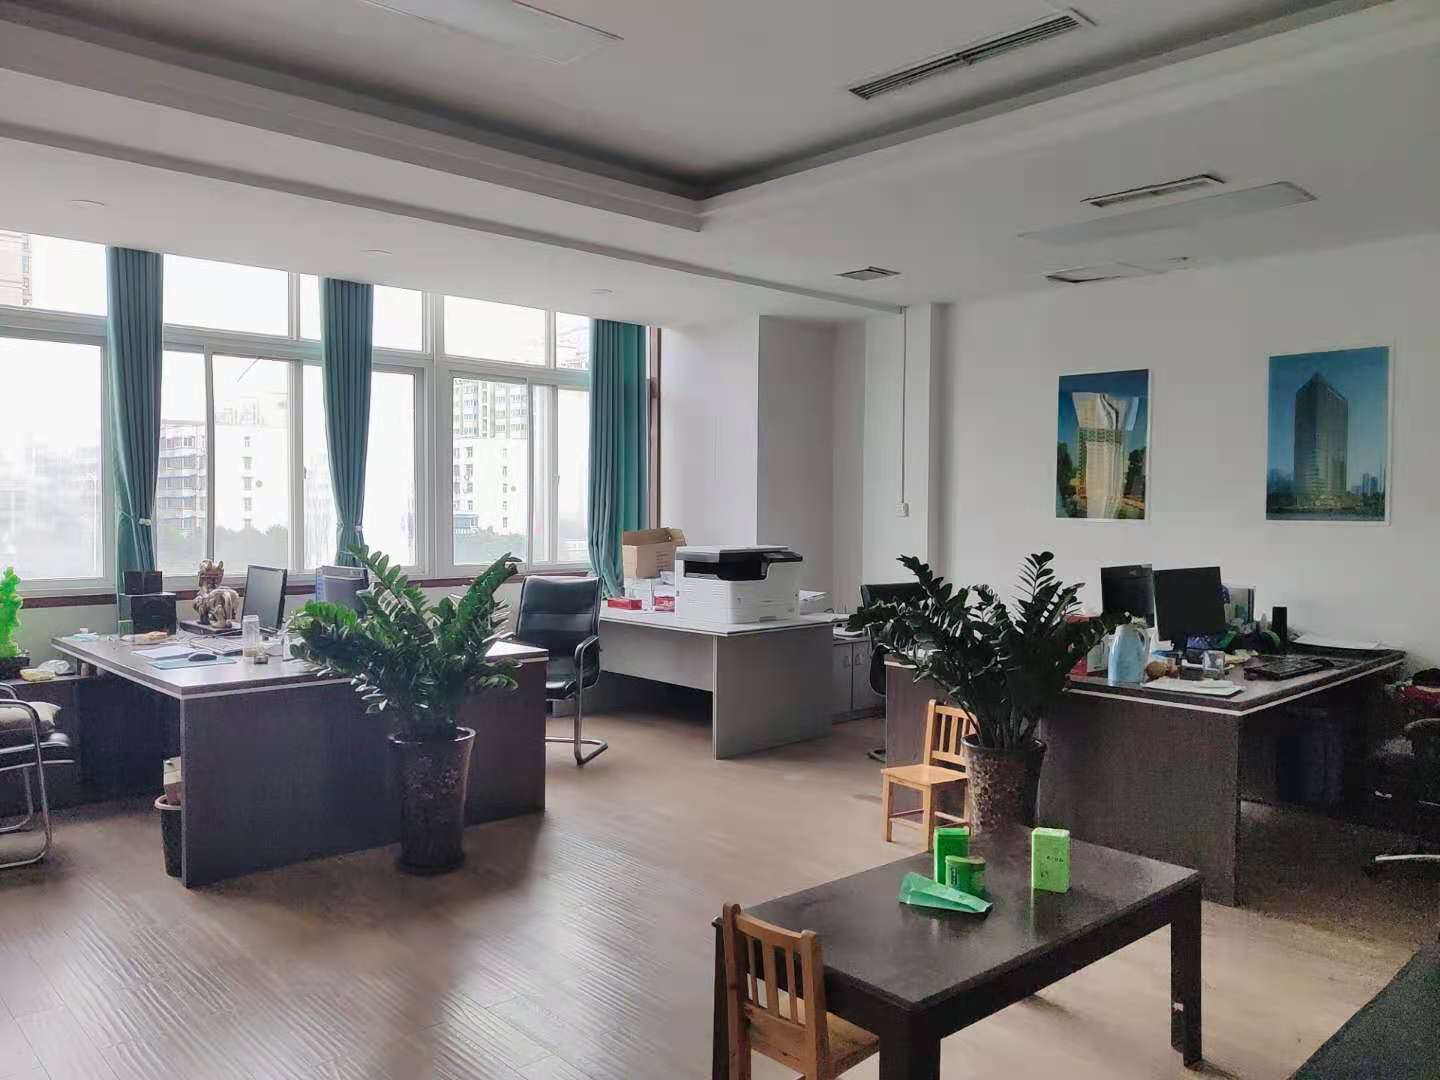 深圳市广泰建筑设计有限公司河南分公司